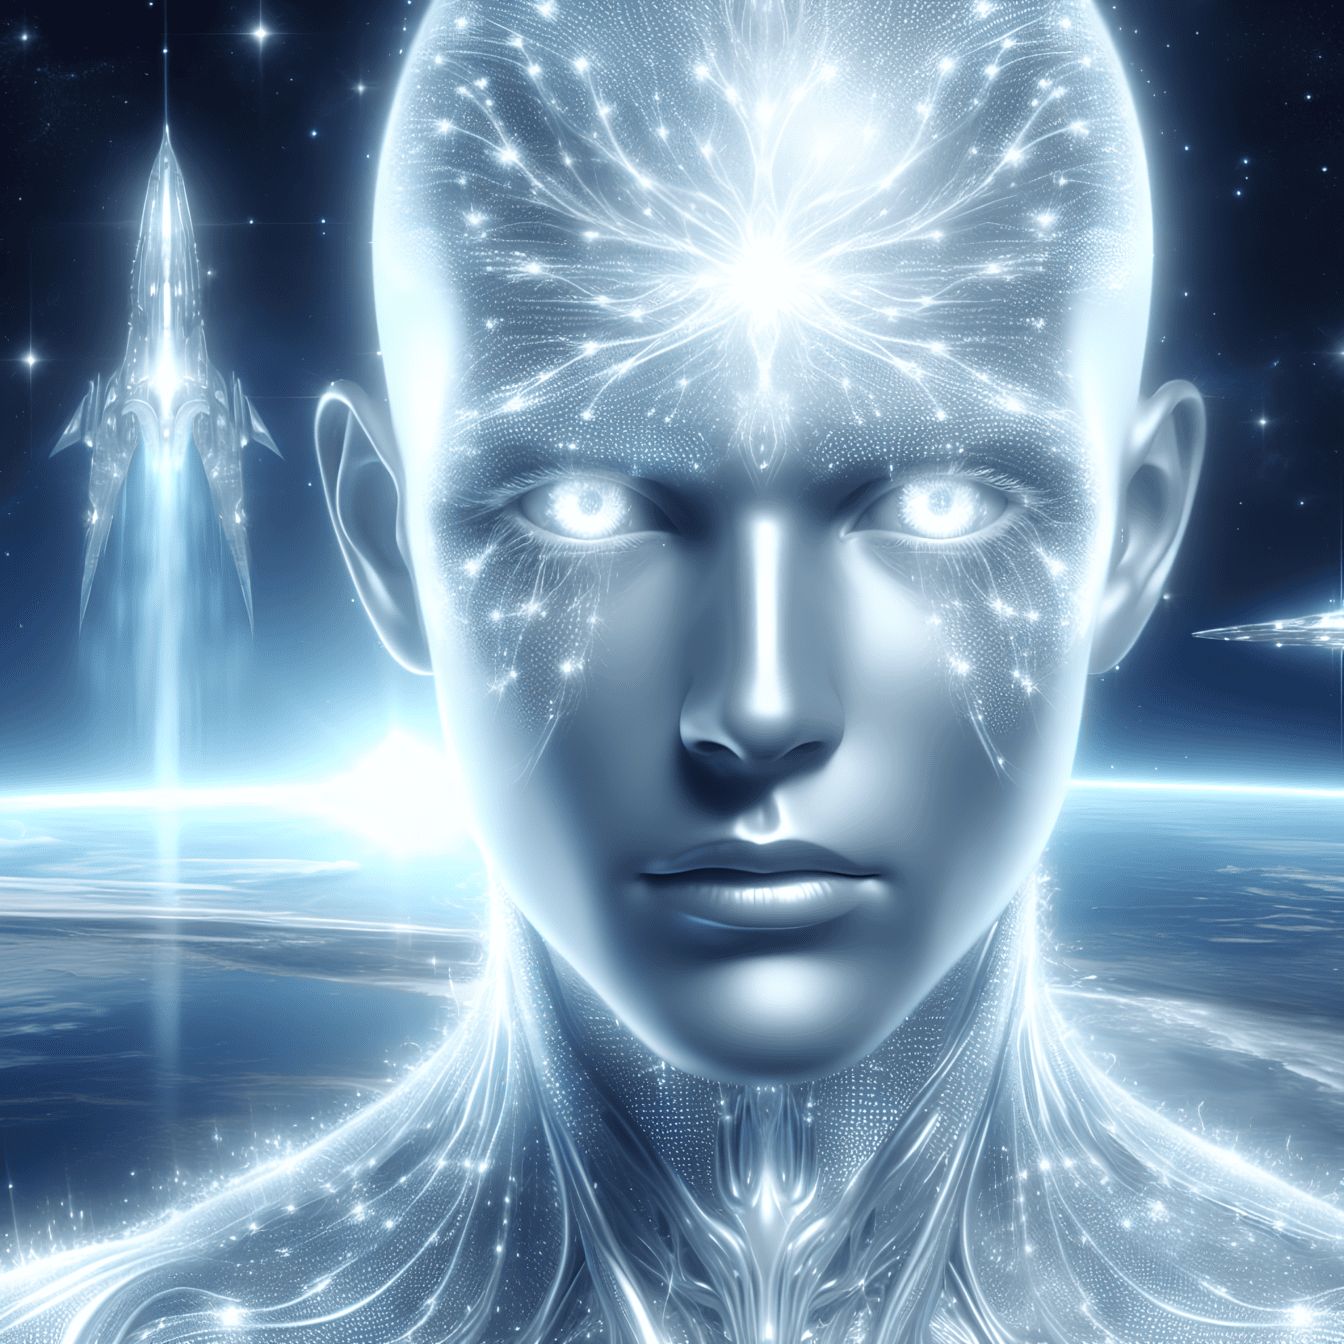 Das Konzept des Quanten-Aliens, Porträt eines außerirdischen Cyborgs mit künstlicher Intelligenz und einem Raumschiff im Hintergrund